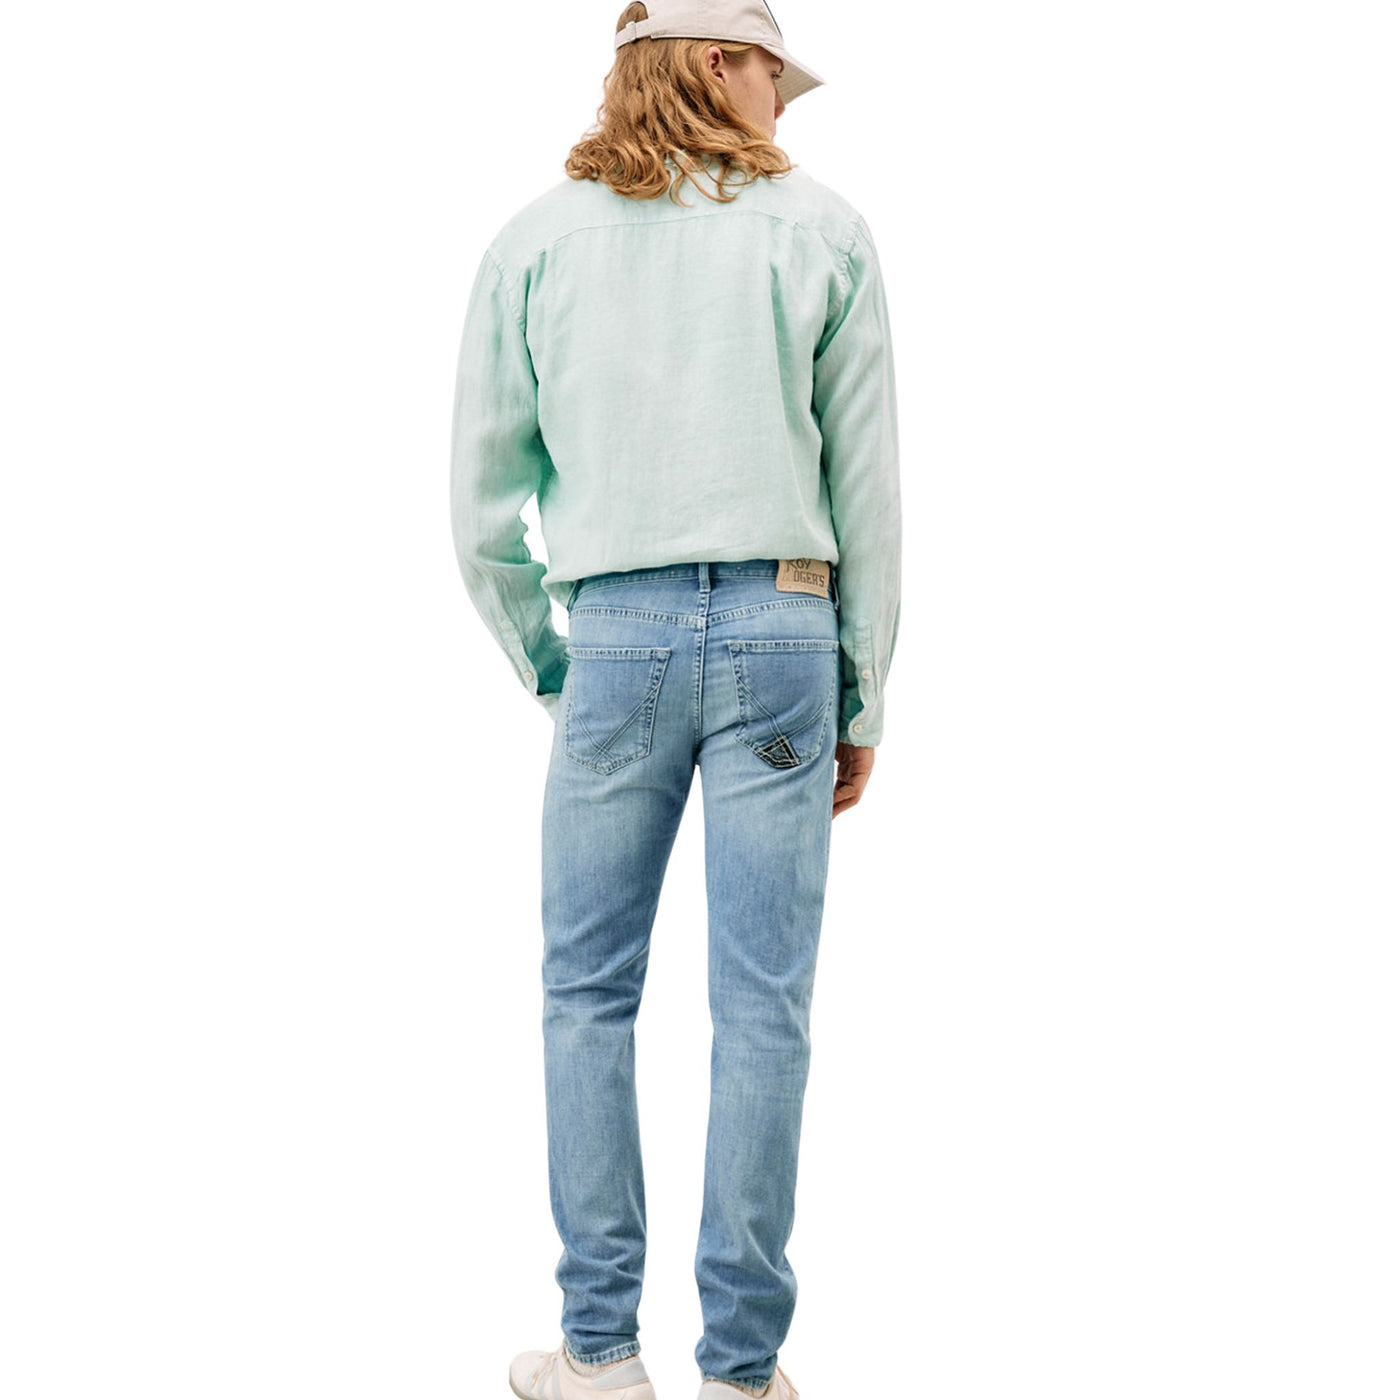 Retro modello con Jeans in misto cotone, modello cinque tasche con lavaggio chiaro